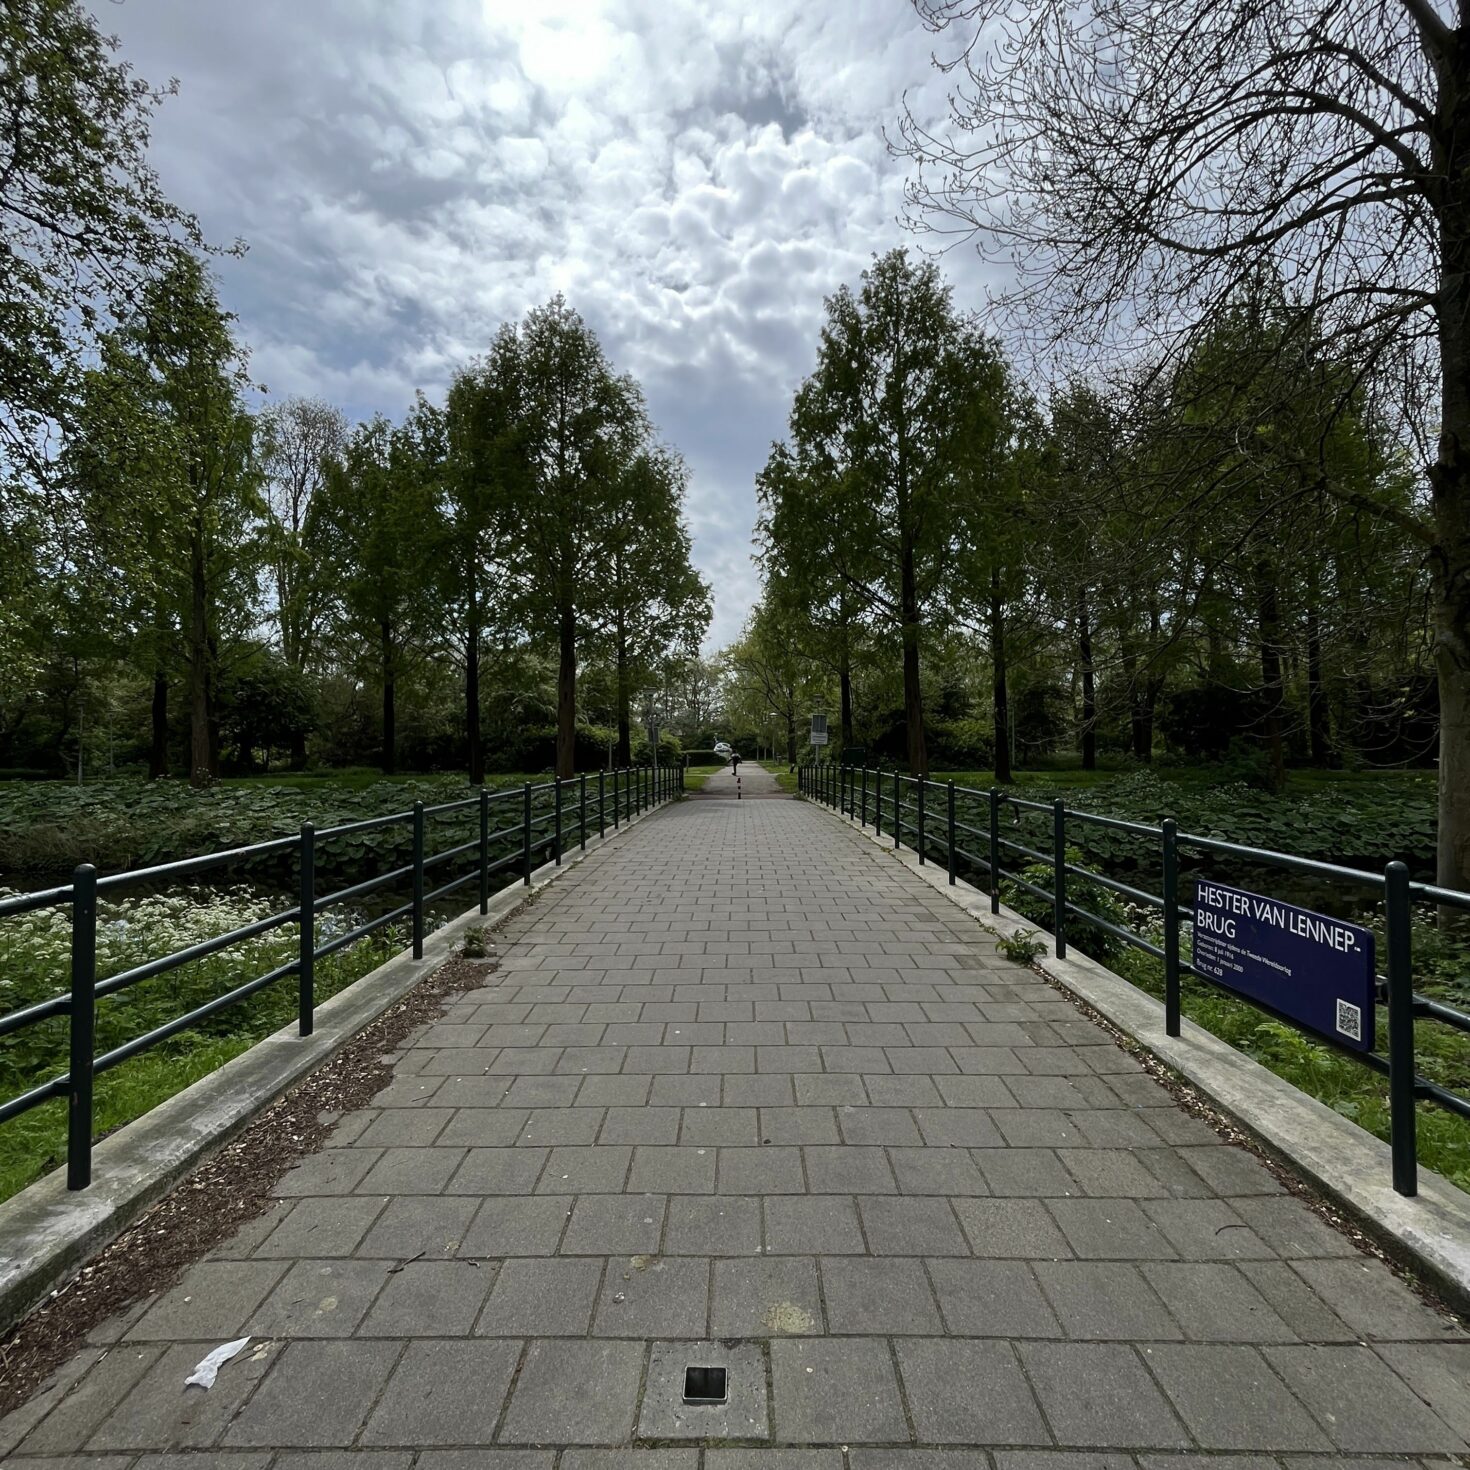 Voet- en fietspad leidend naar een park over de Hester van Lennepbrug